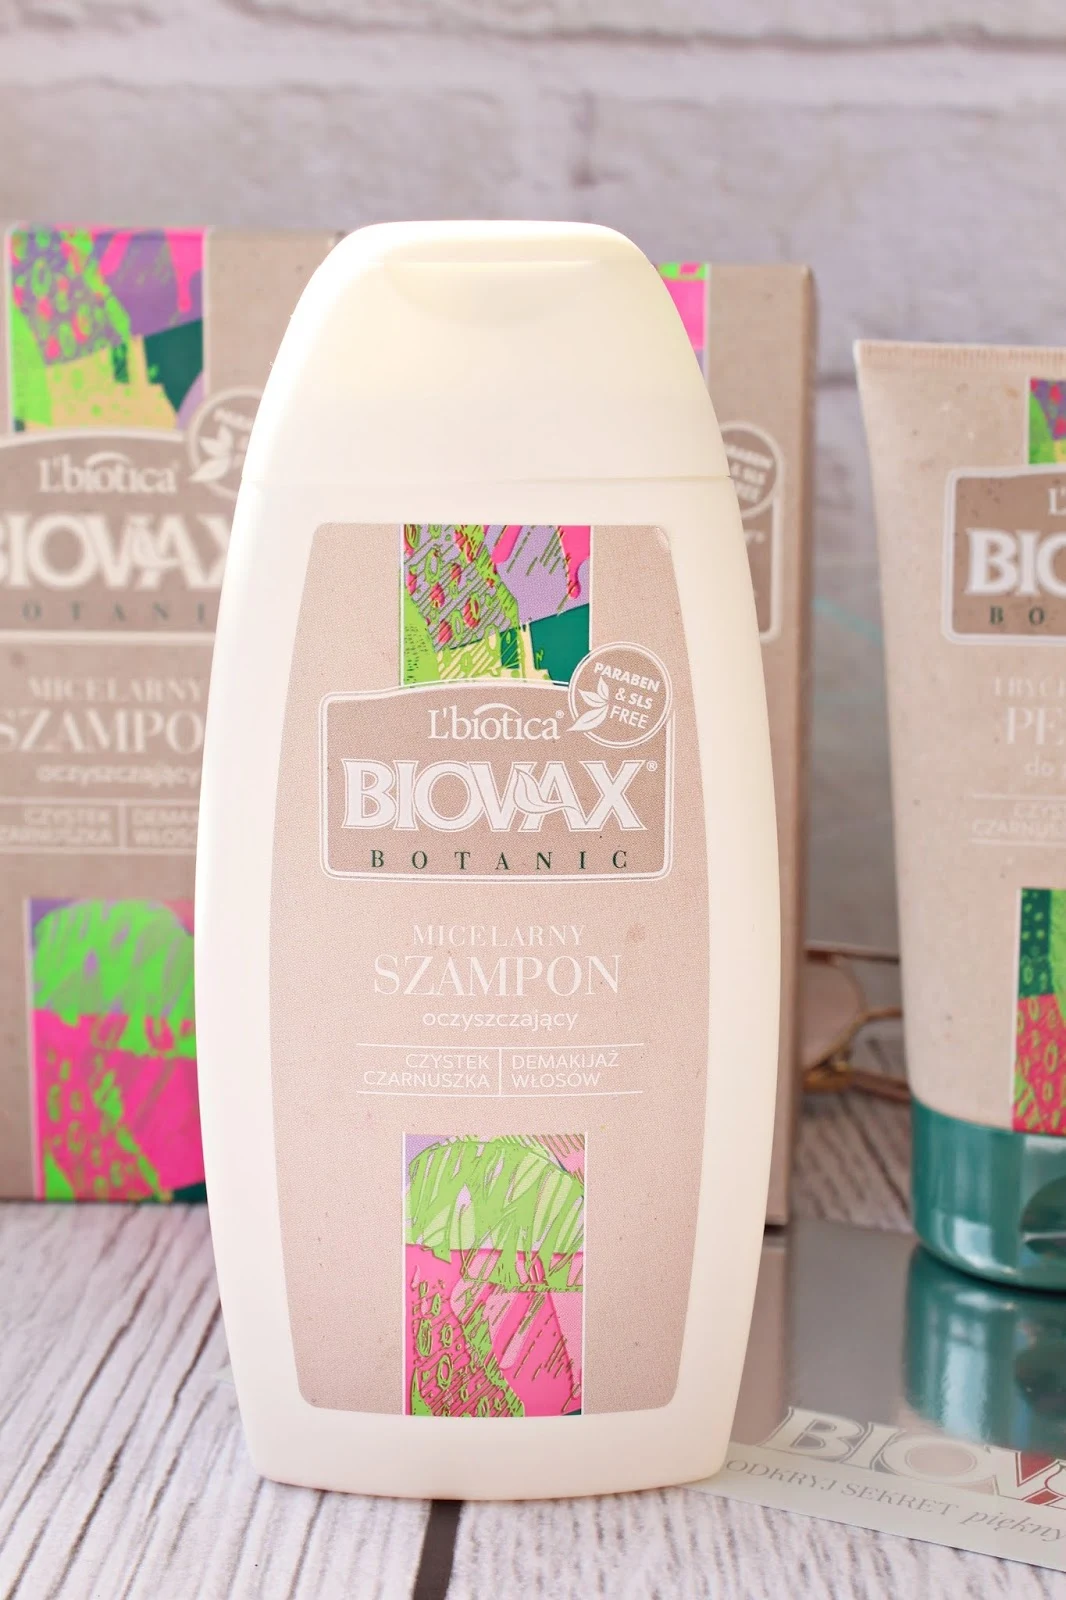 L'biotica BIOVAX Botanic Trychologiczny peeling do skóry głowy & Micelarny szampon oczyszczający